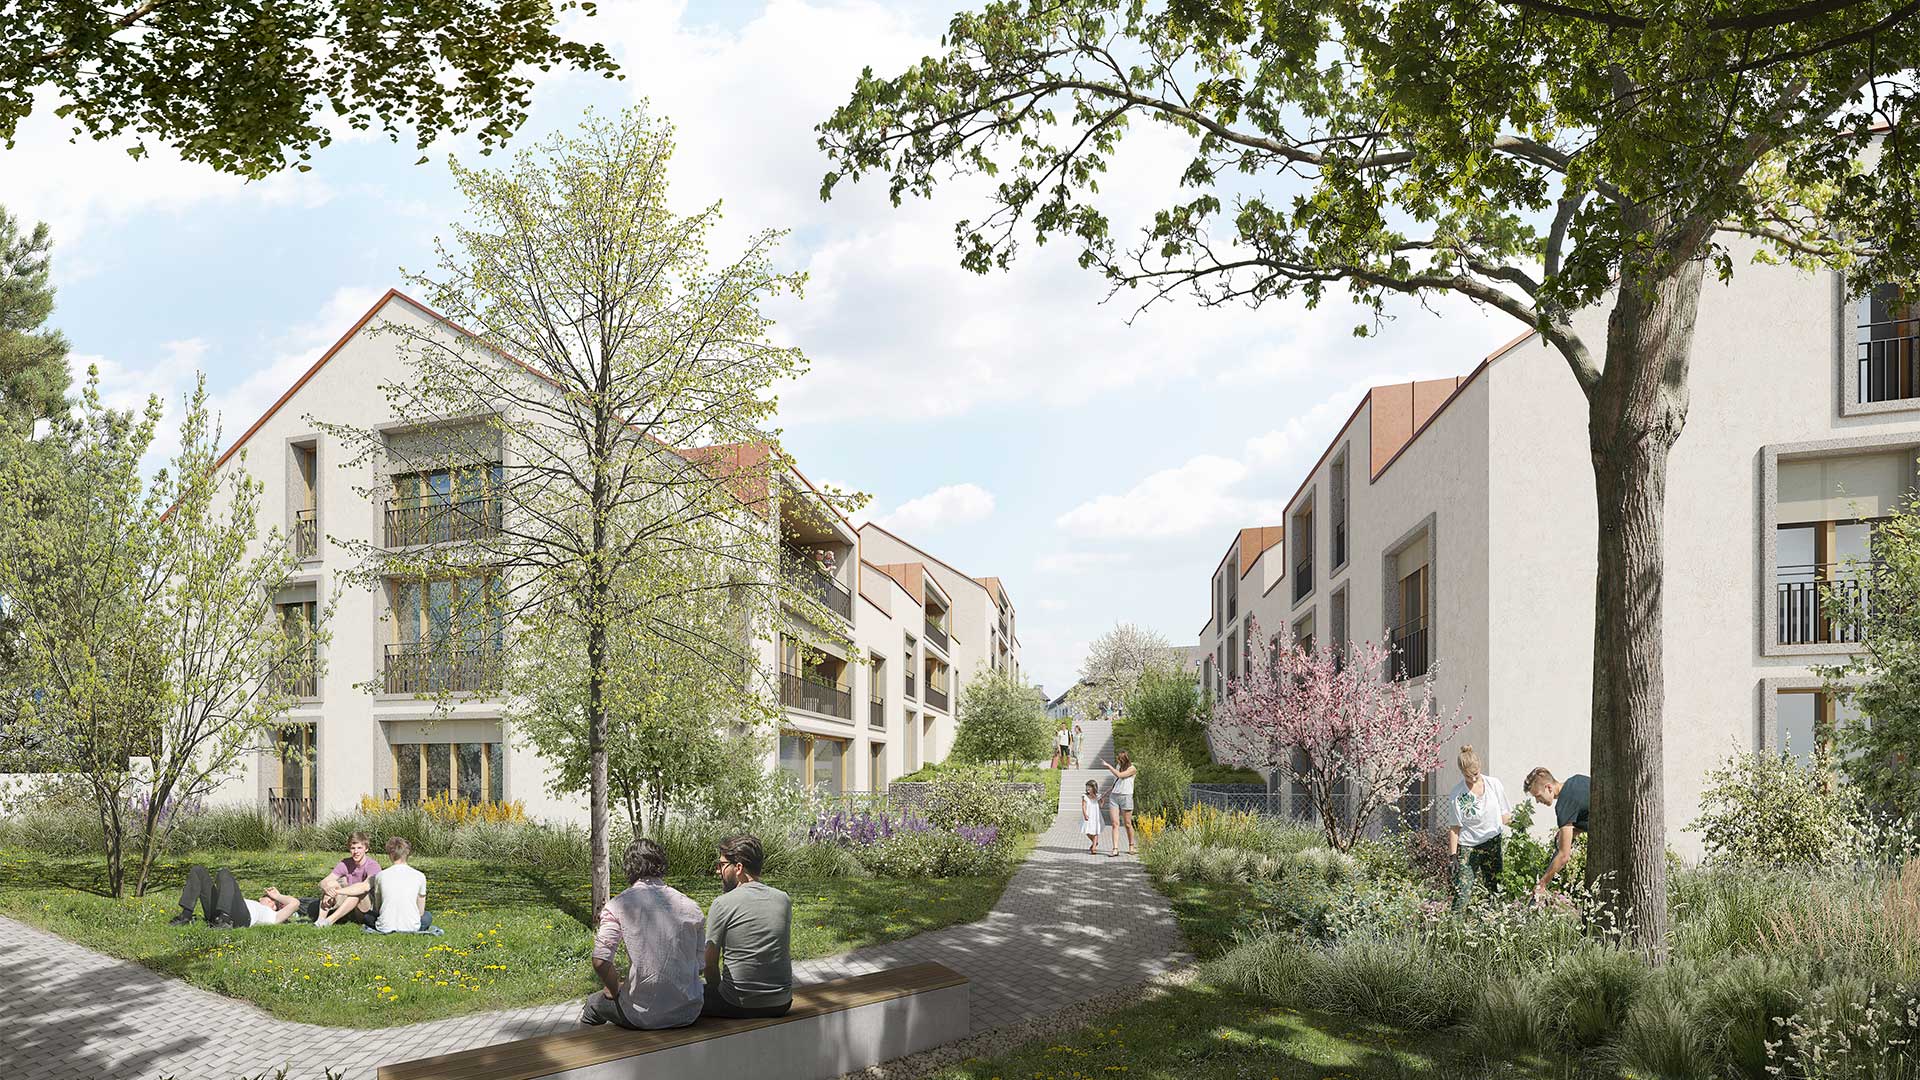 Image de synthèse de la promotion immobilière à Bernex Place, une construction de 20 appartements de 2.5 pièces à 6 pièces